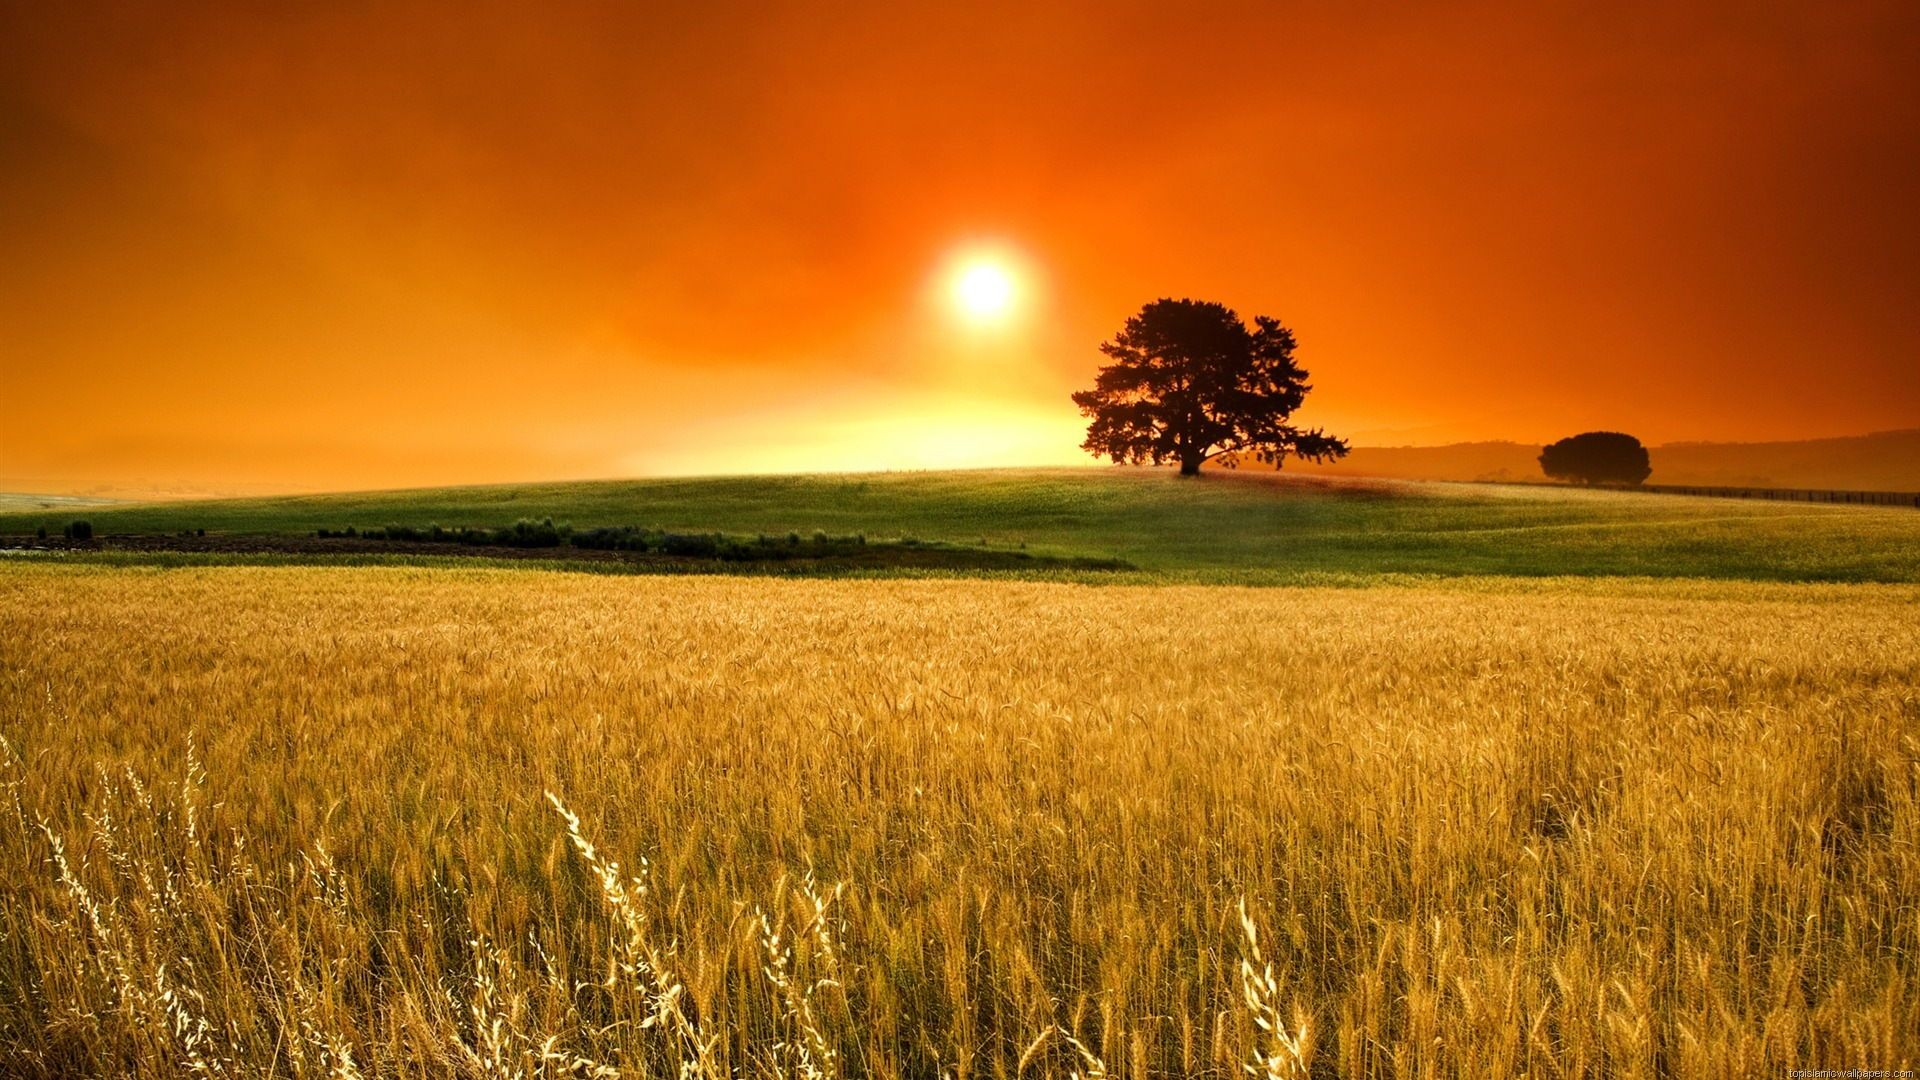 Sunrise Field Hd Wallpaper New Desktop Widescreen Cool Image Of Fields Free Download